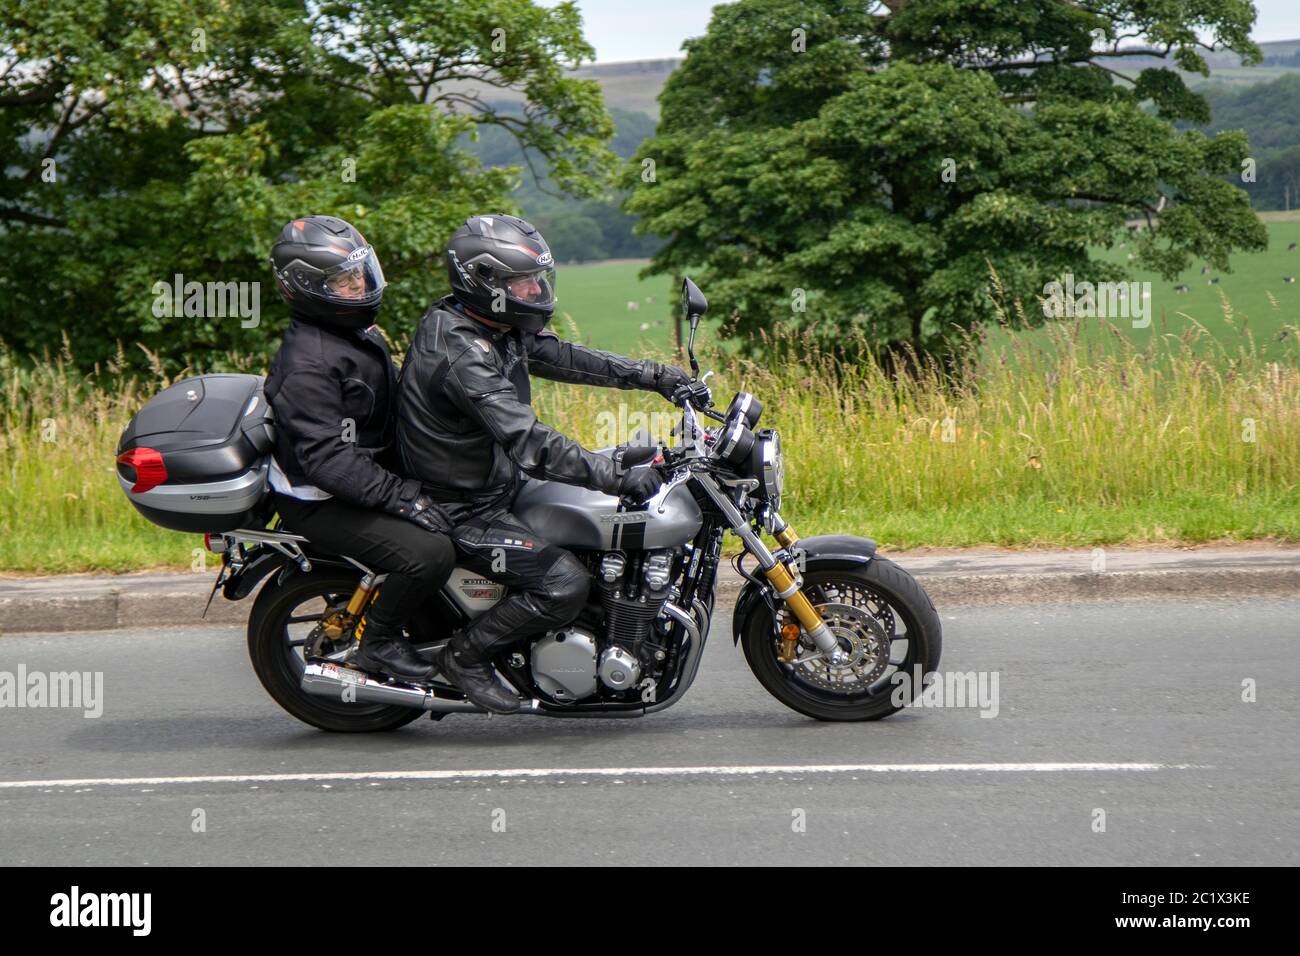 2018 Honda CB1000 Nq-J; Motorbike rider; two wheeled transport, motorcycles, vehicle, roads, motorbikes, bike riders motoring in Chorley, UK Stock Photo